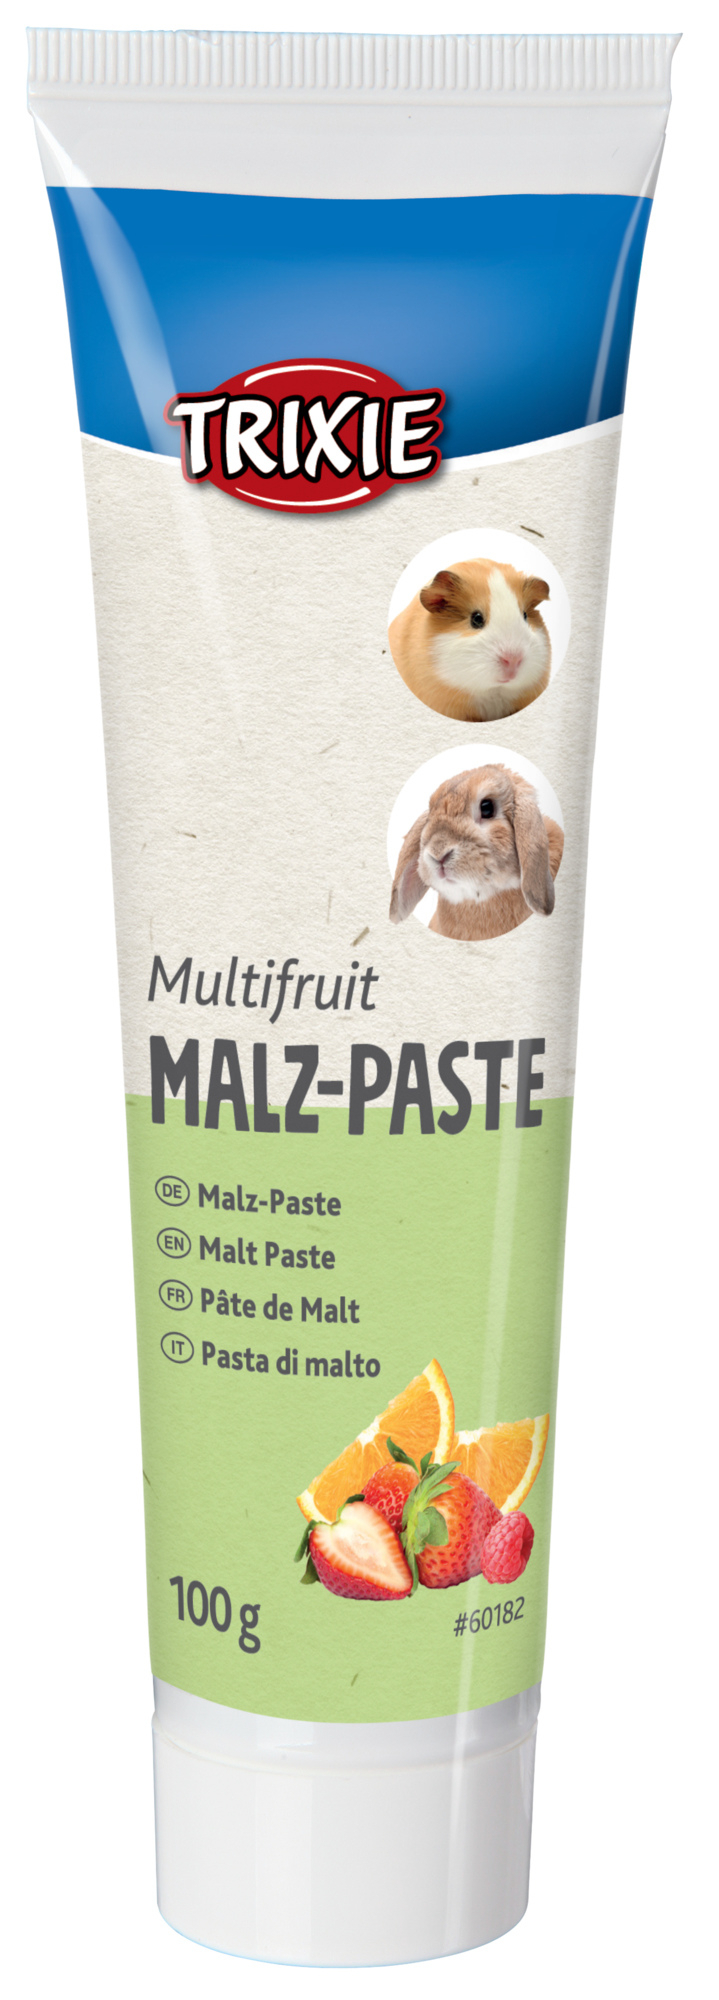 Malz-Paste